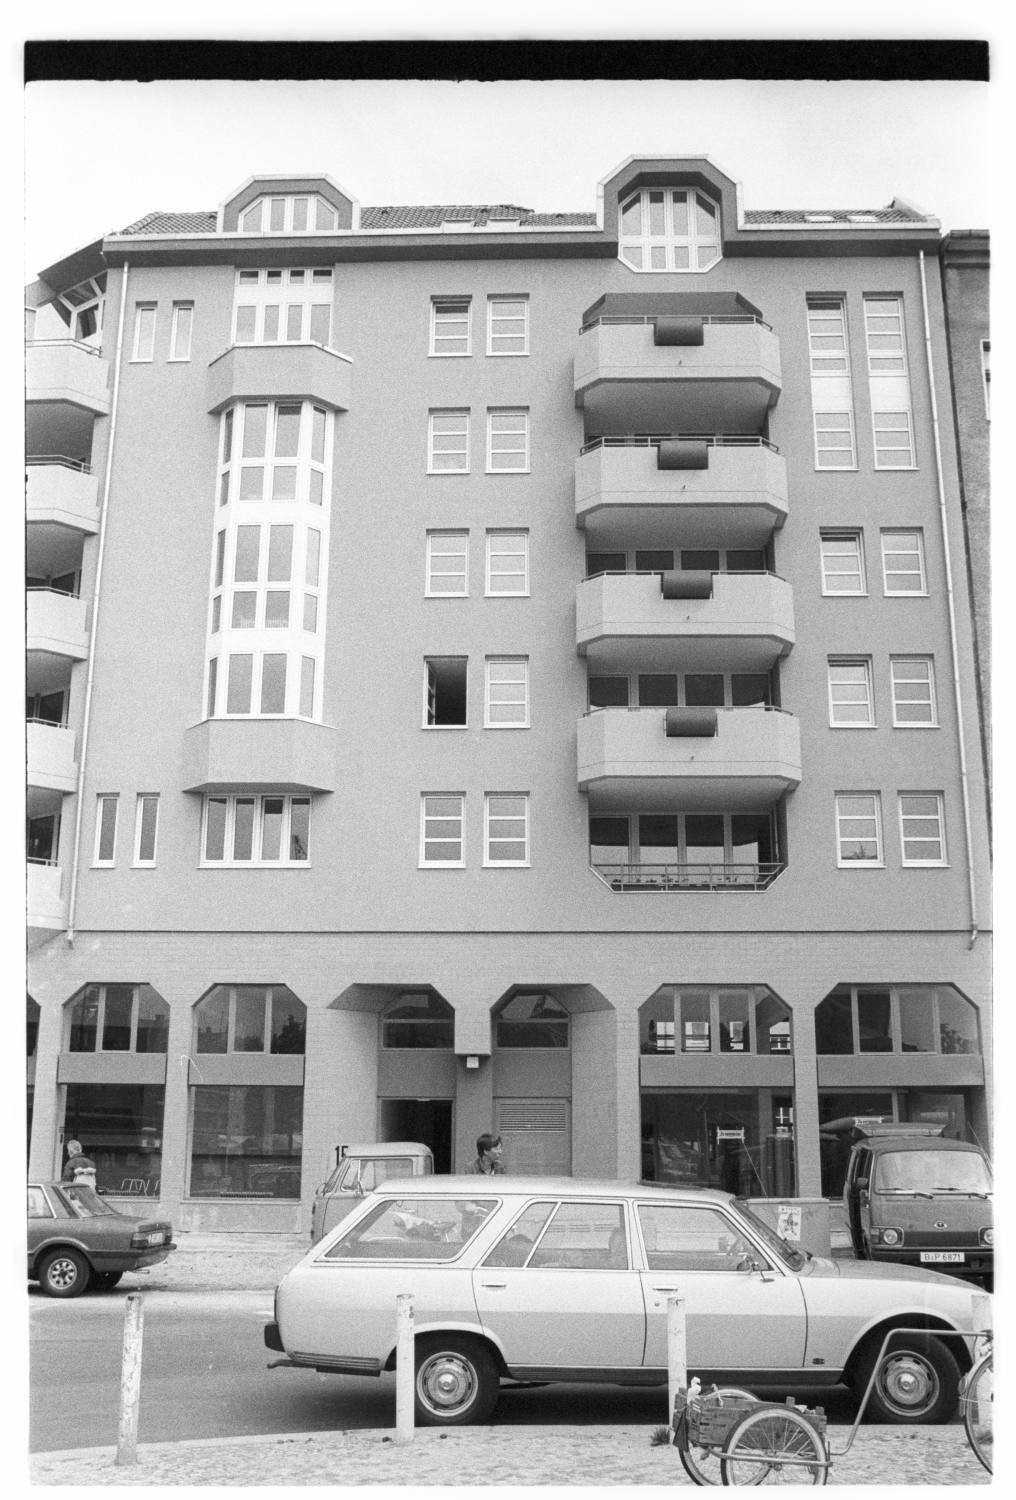 Kleinbildnegative: Mietshaus, Maaßen- Ecke Winterfeldtstraße, 1983 (Museen Tempelhof-Schöneberg/Jürgen Henschel RR-F)